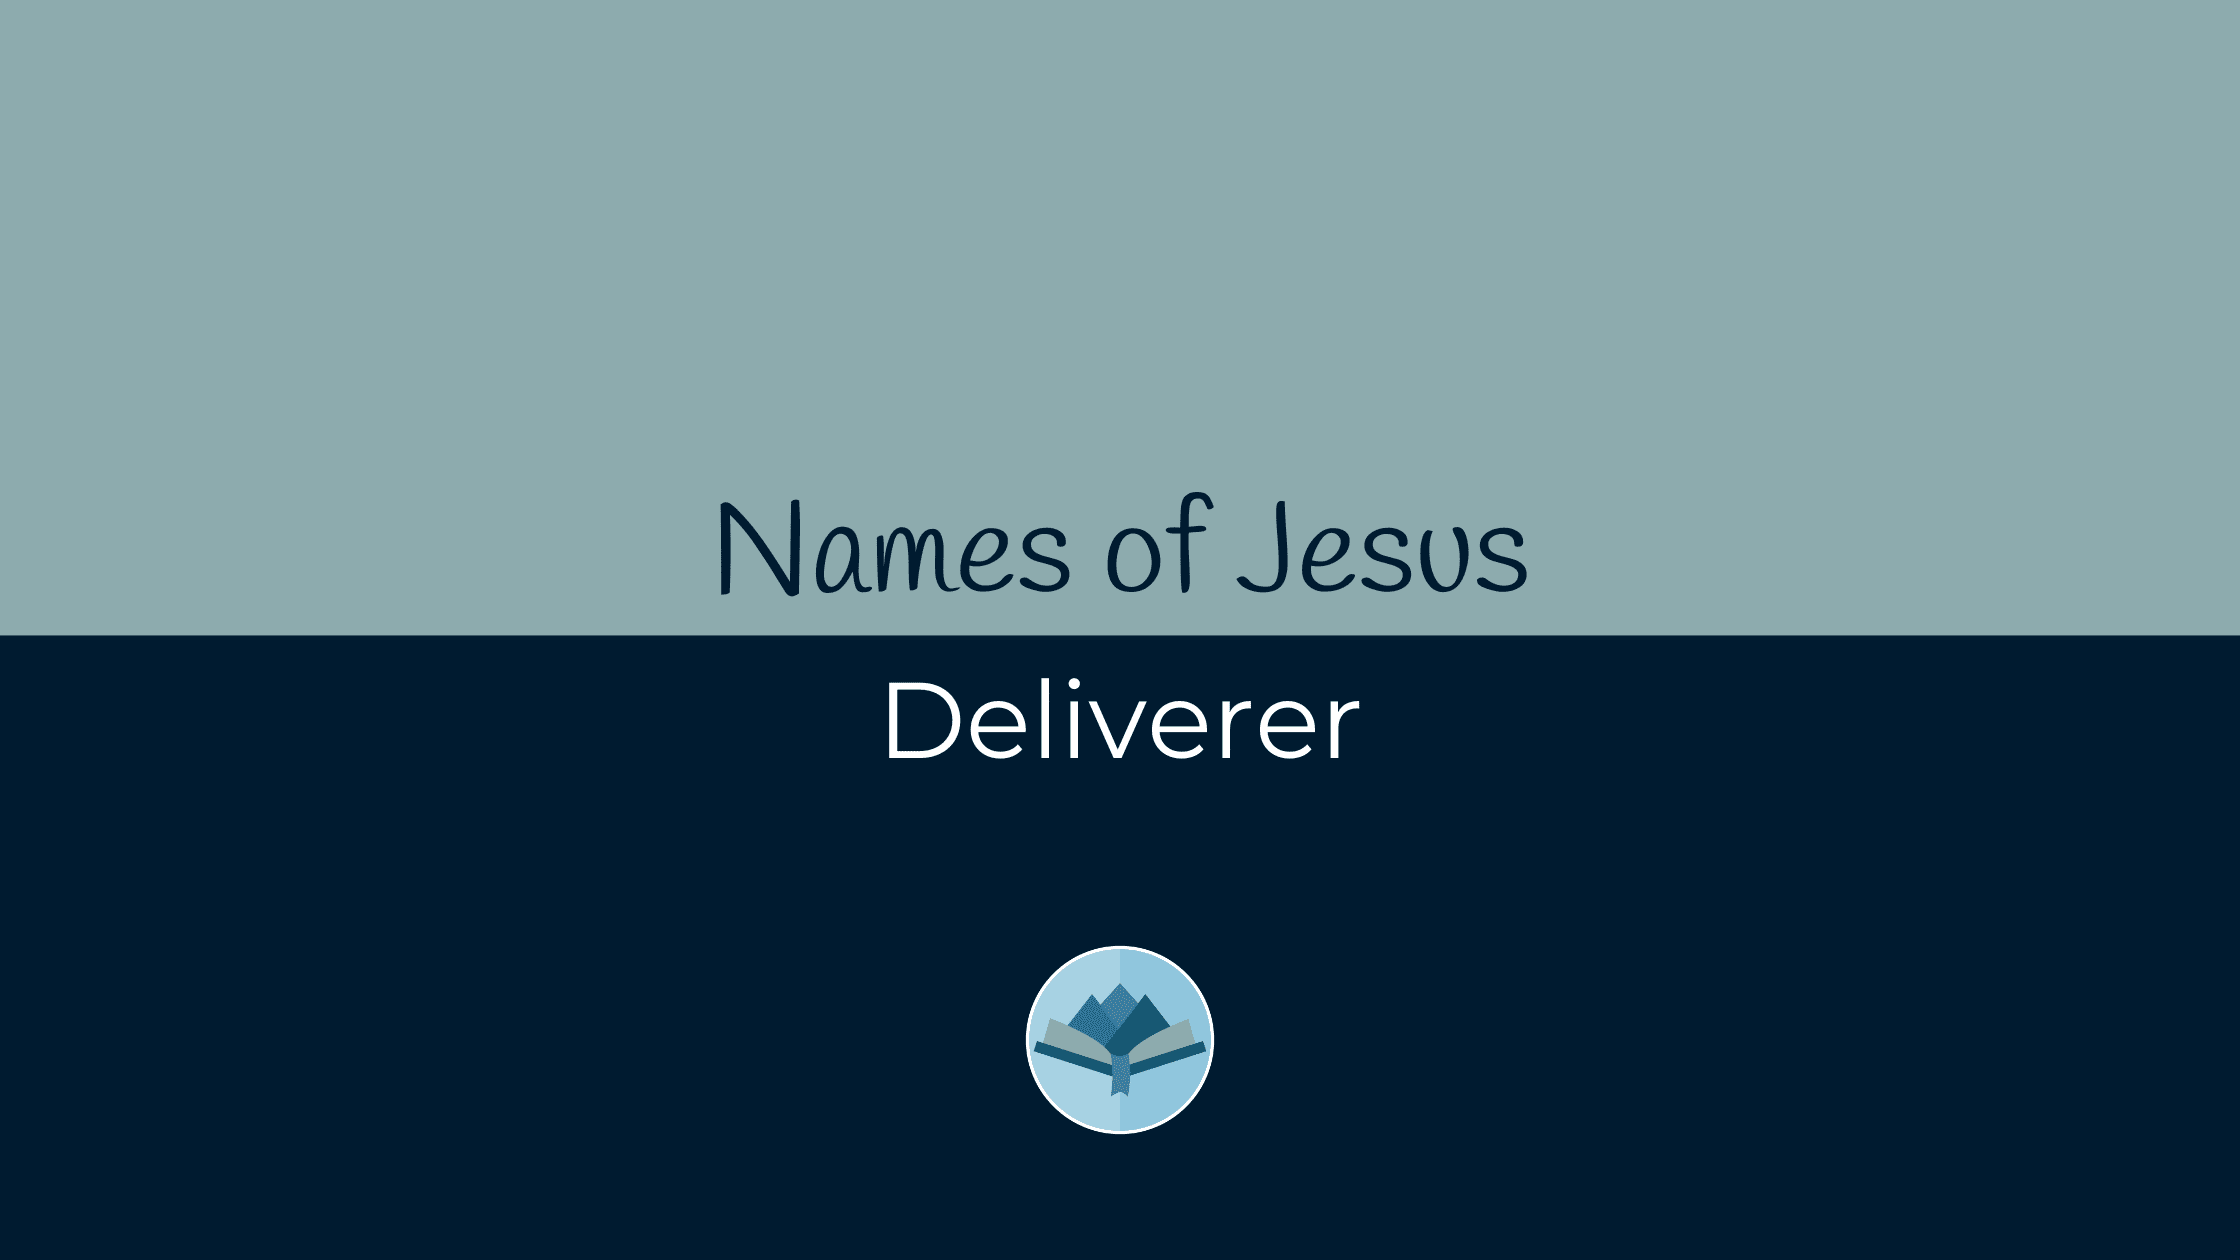 Names of Jesus Deliverer